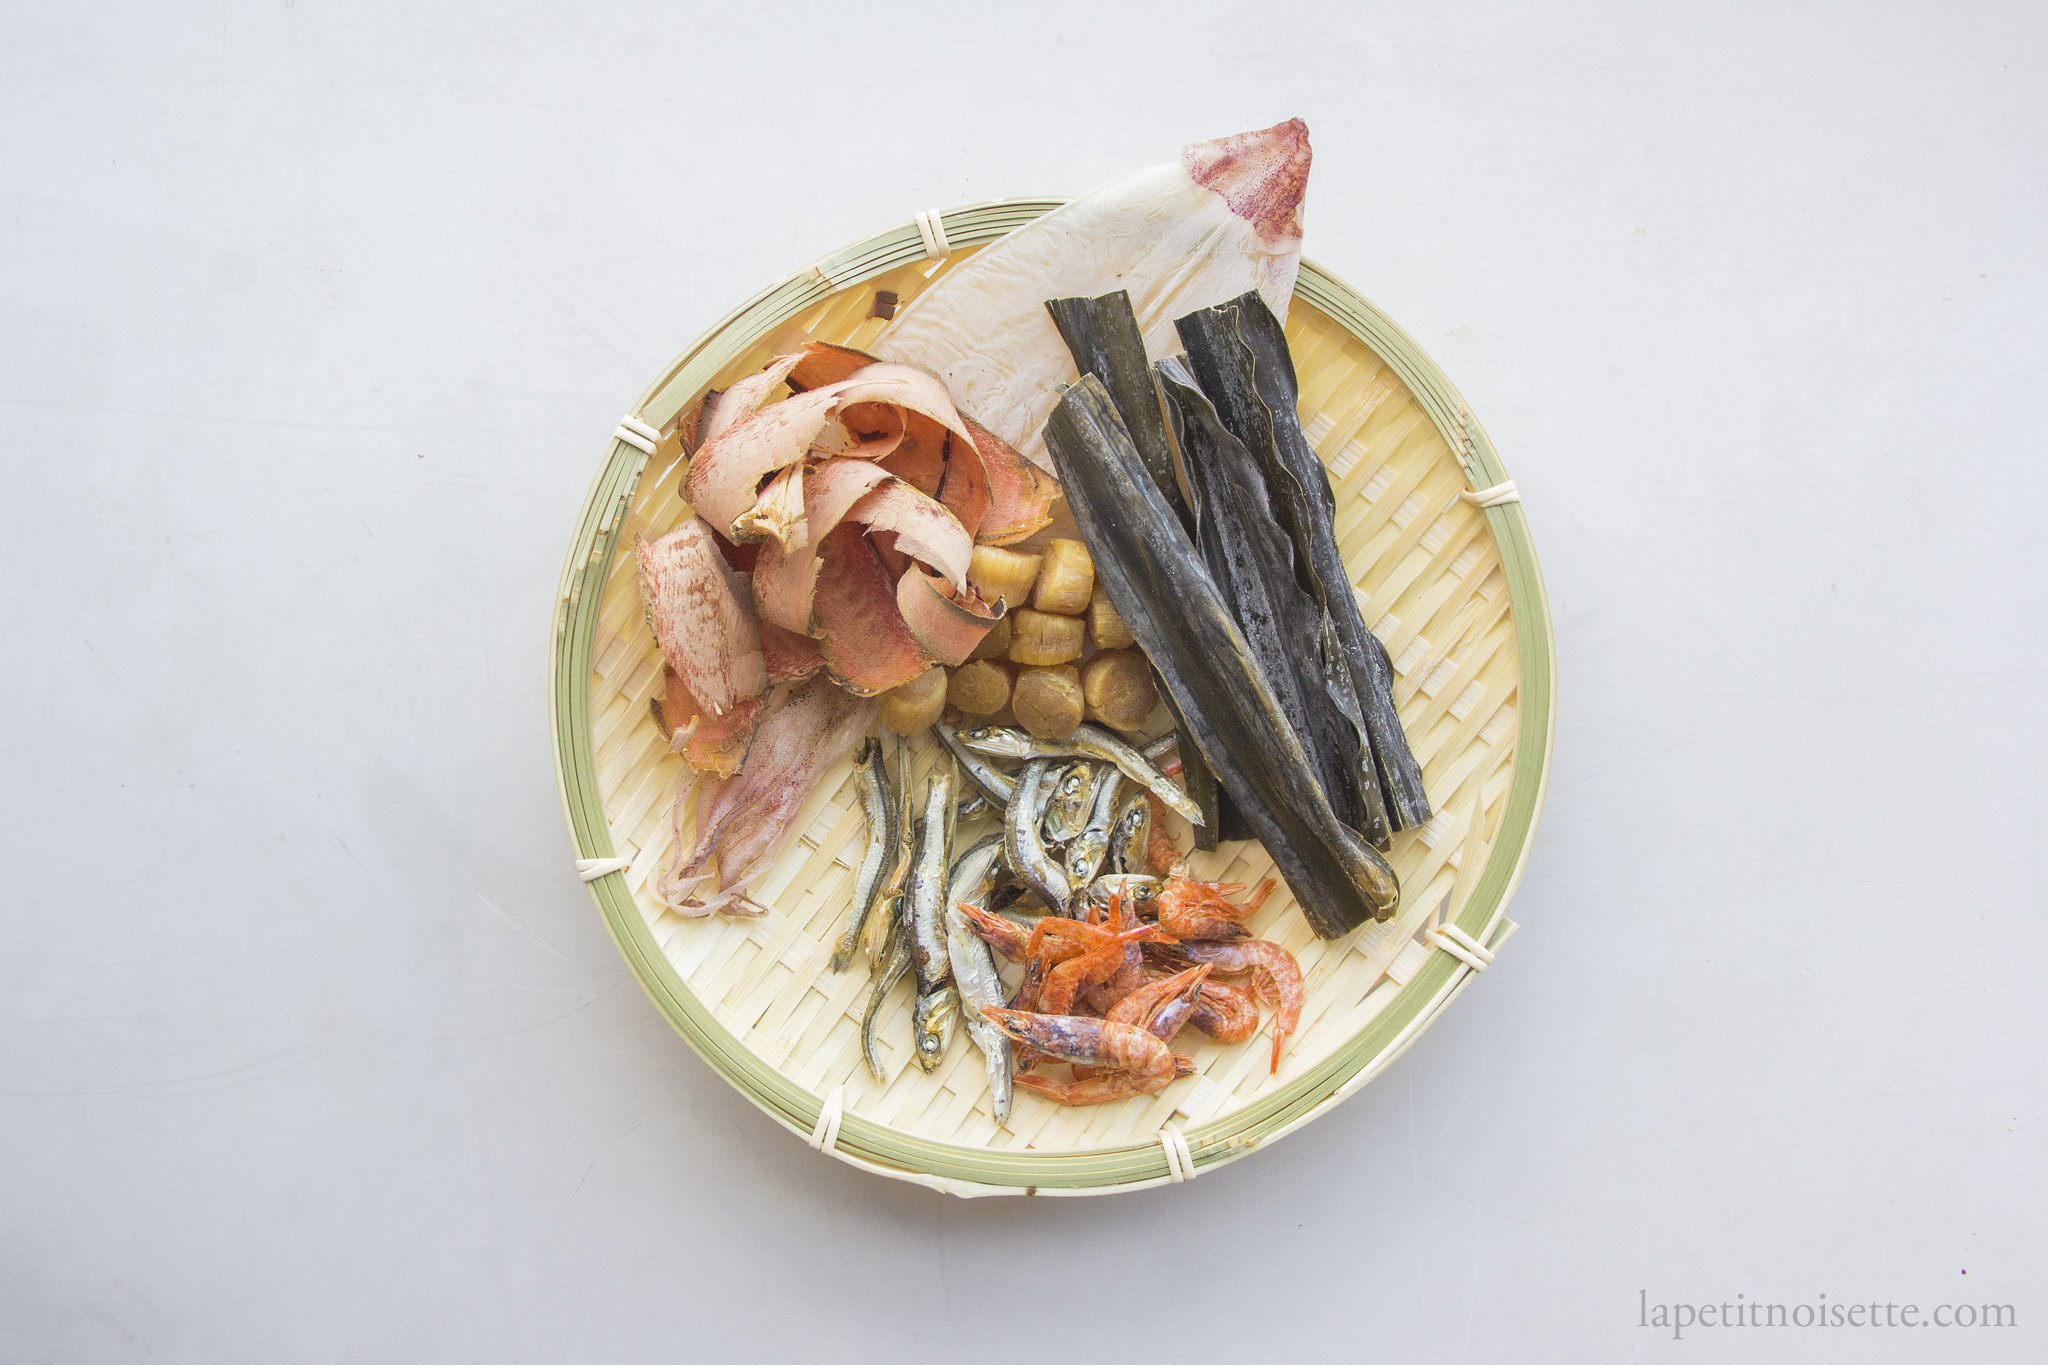 The various dried seafood and kombu needed to make sauce for tamagokakegohan.